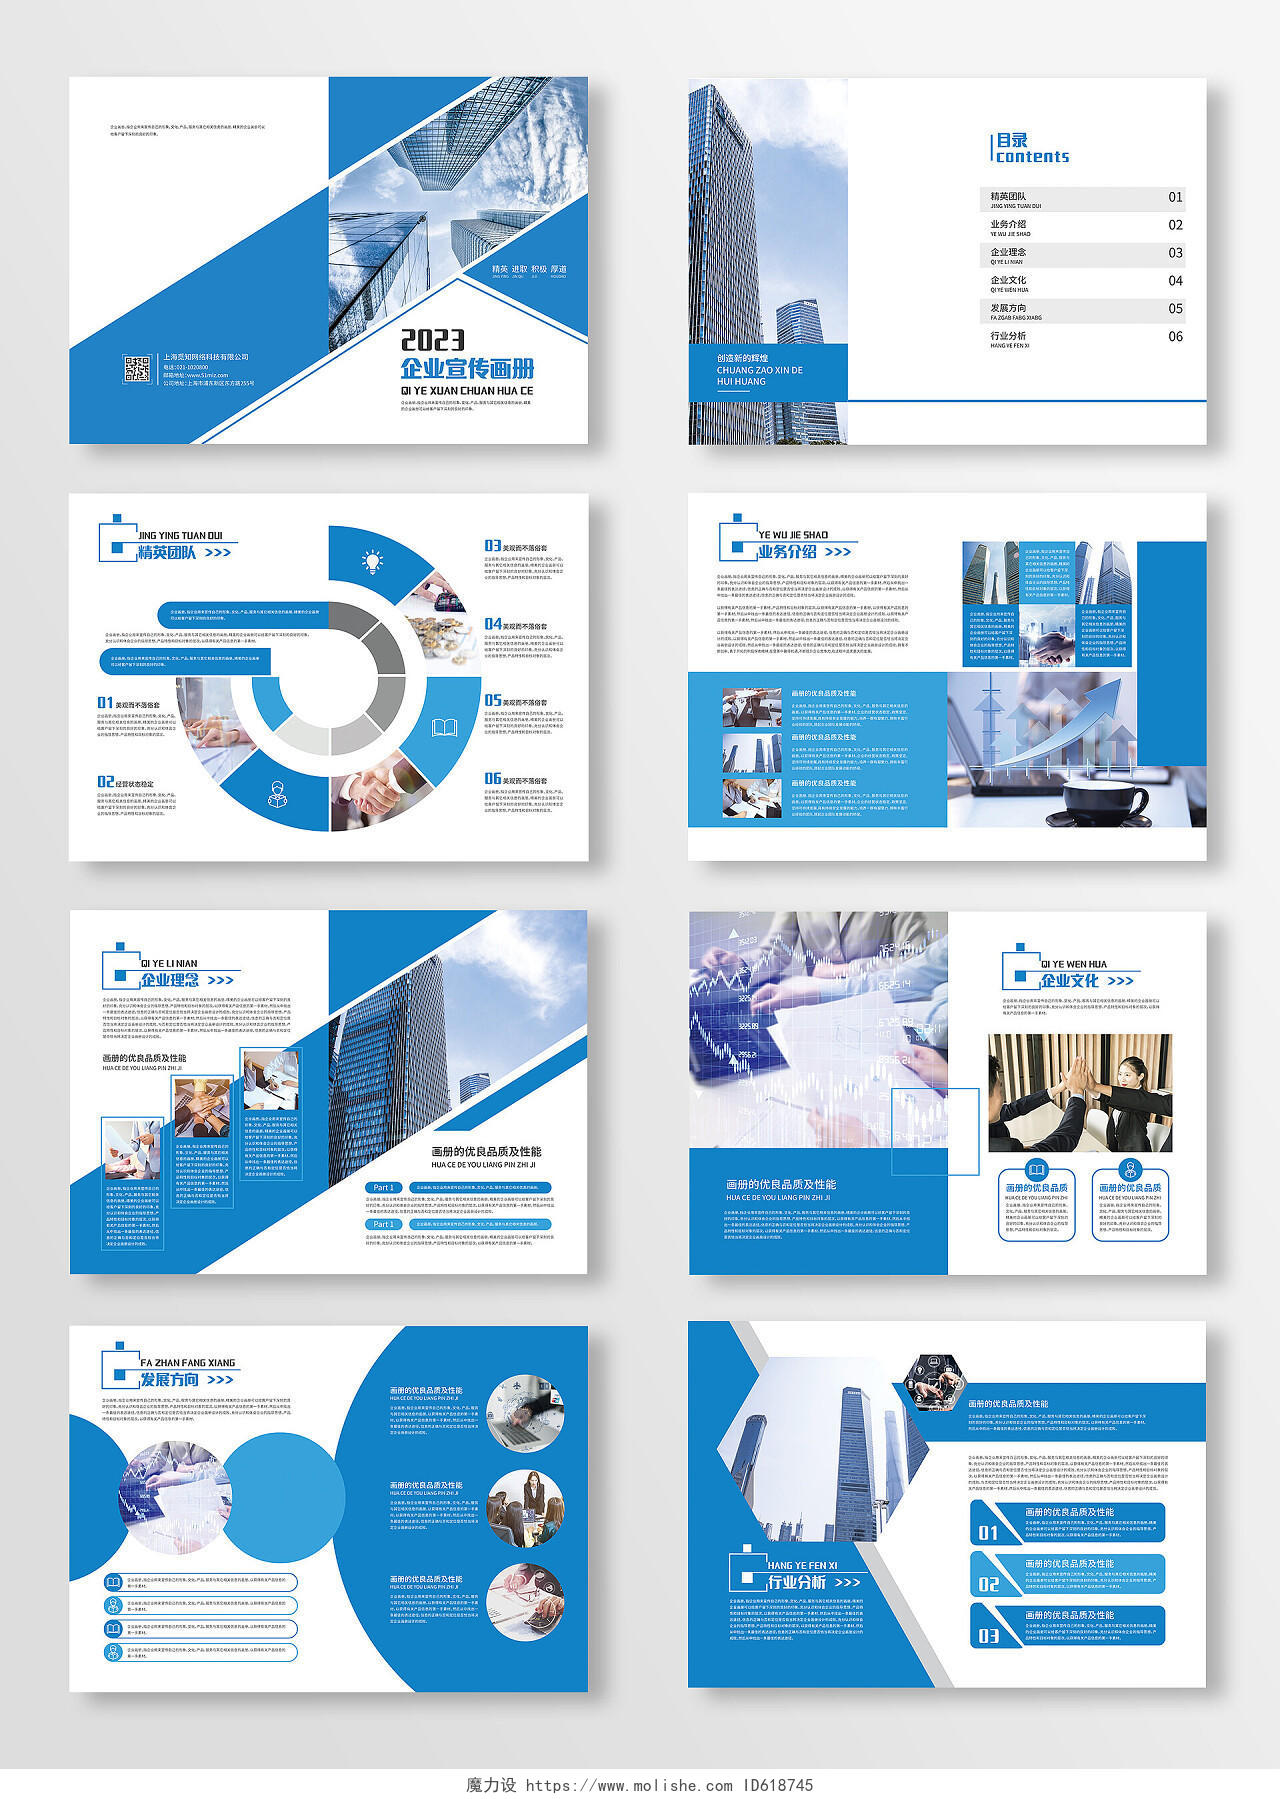 蓝色几何企业宣传画册企业文化宣传画册企业宣传册企业公司画册整套